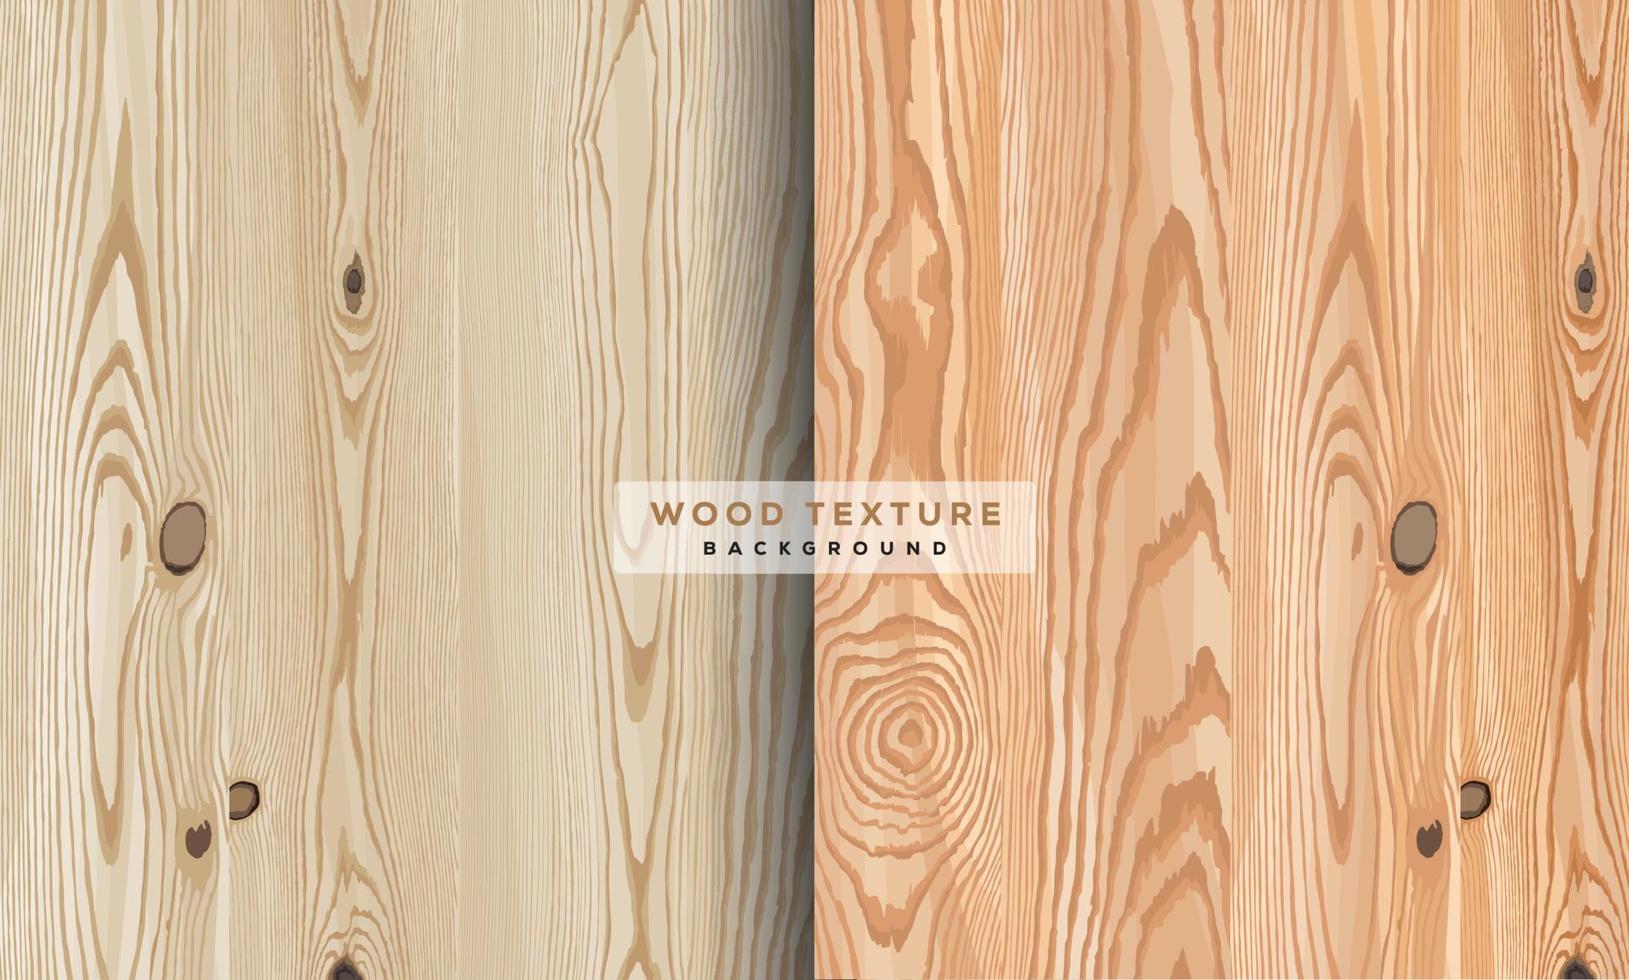 texture bois vecteur. texture bois réaliste, 3d. élément pour votre conception, publicité. illustration vectorielle. vecteur